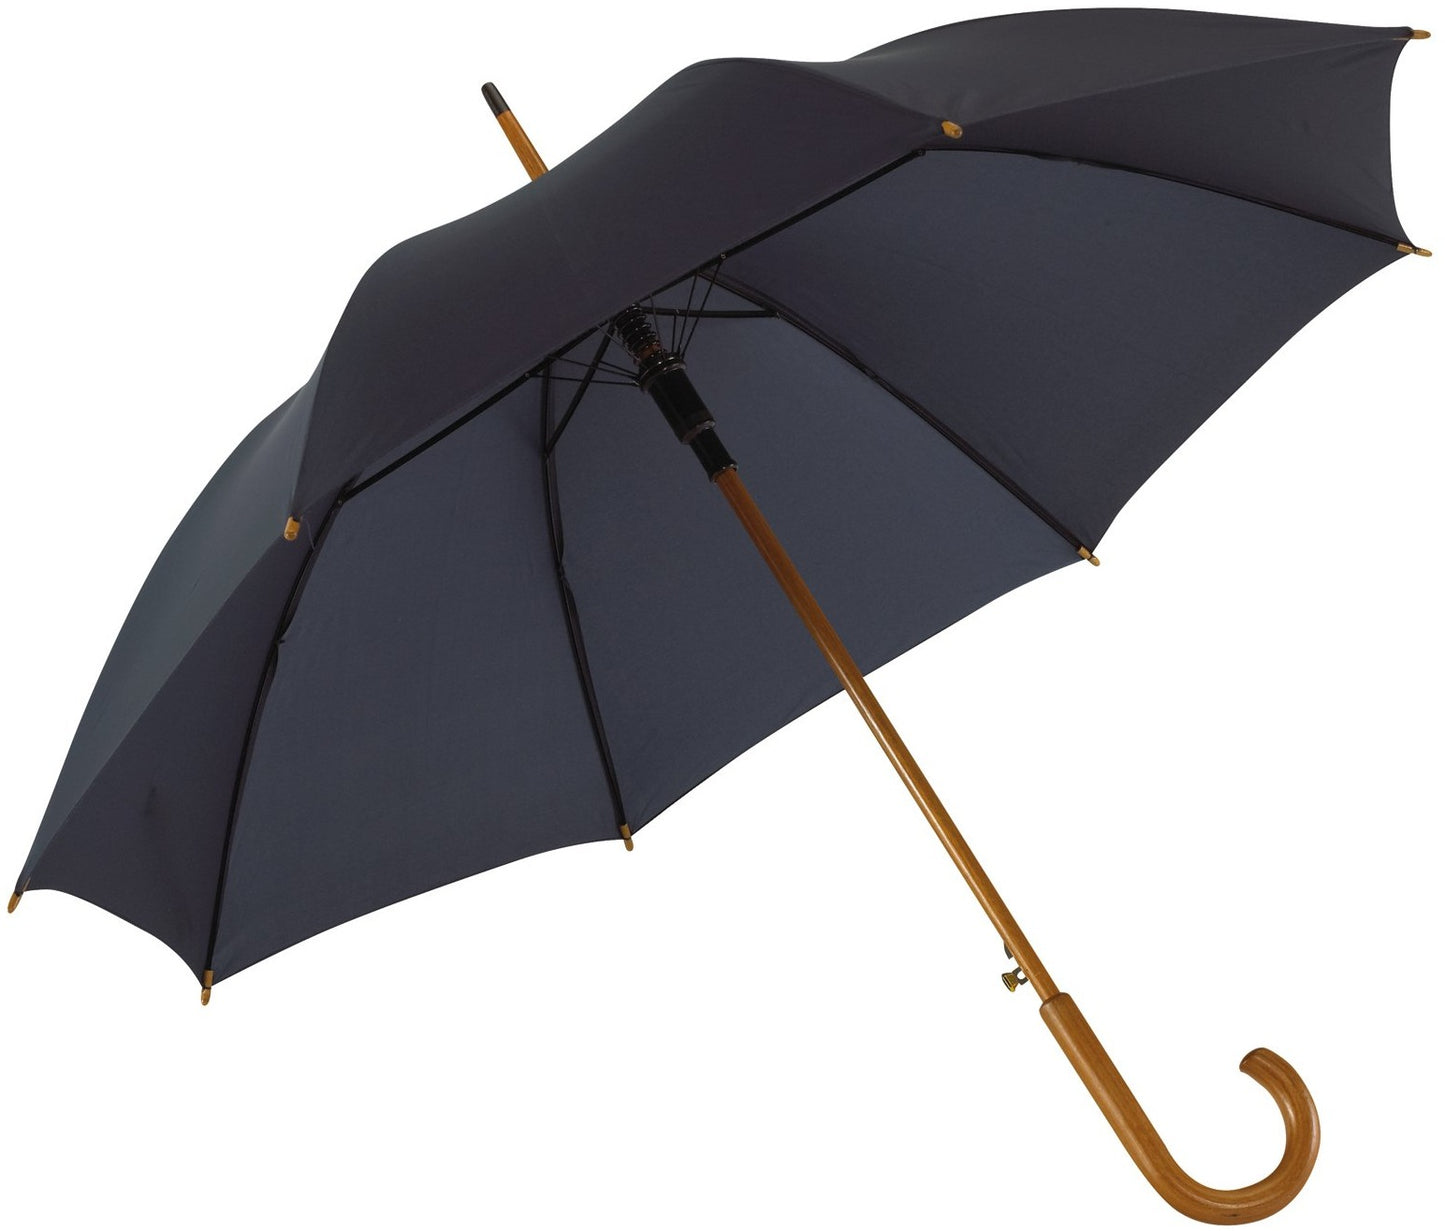 Μπλε μαρίν (σκούρο) ομπρέλα βροχής, αυτόματη, με ξύλινη κυρτή λαβή.